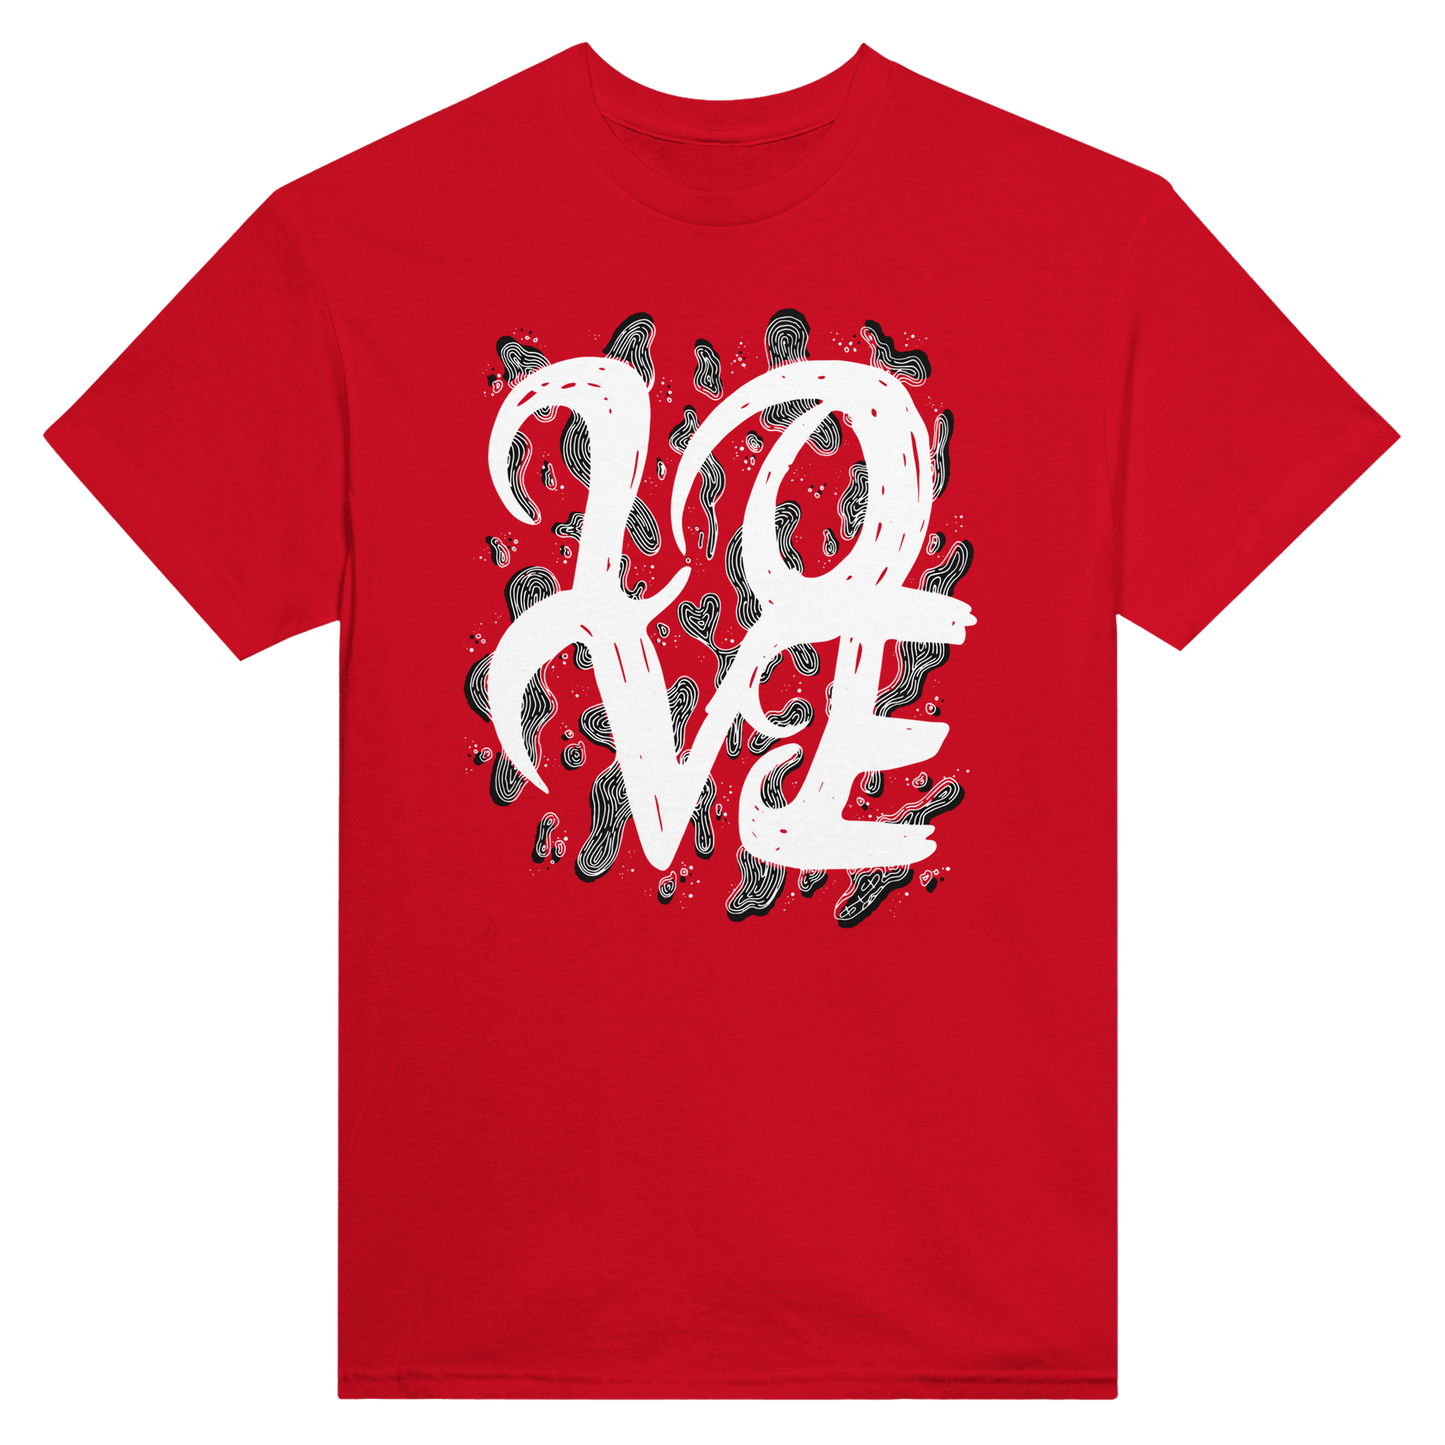 L.O.V.E - Heavyweight Unisex Crewneck T-shirt apparel Red / S